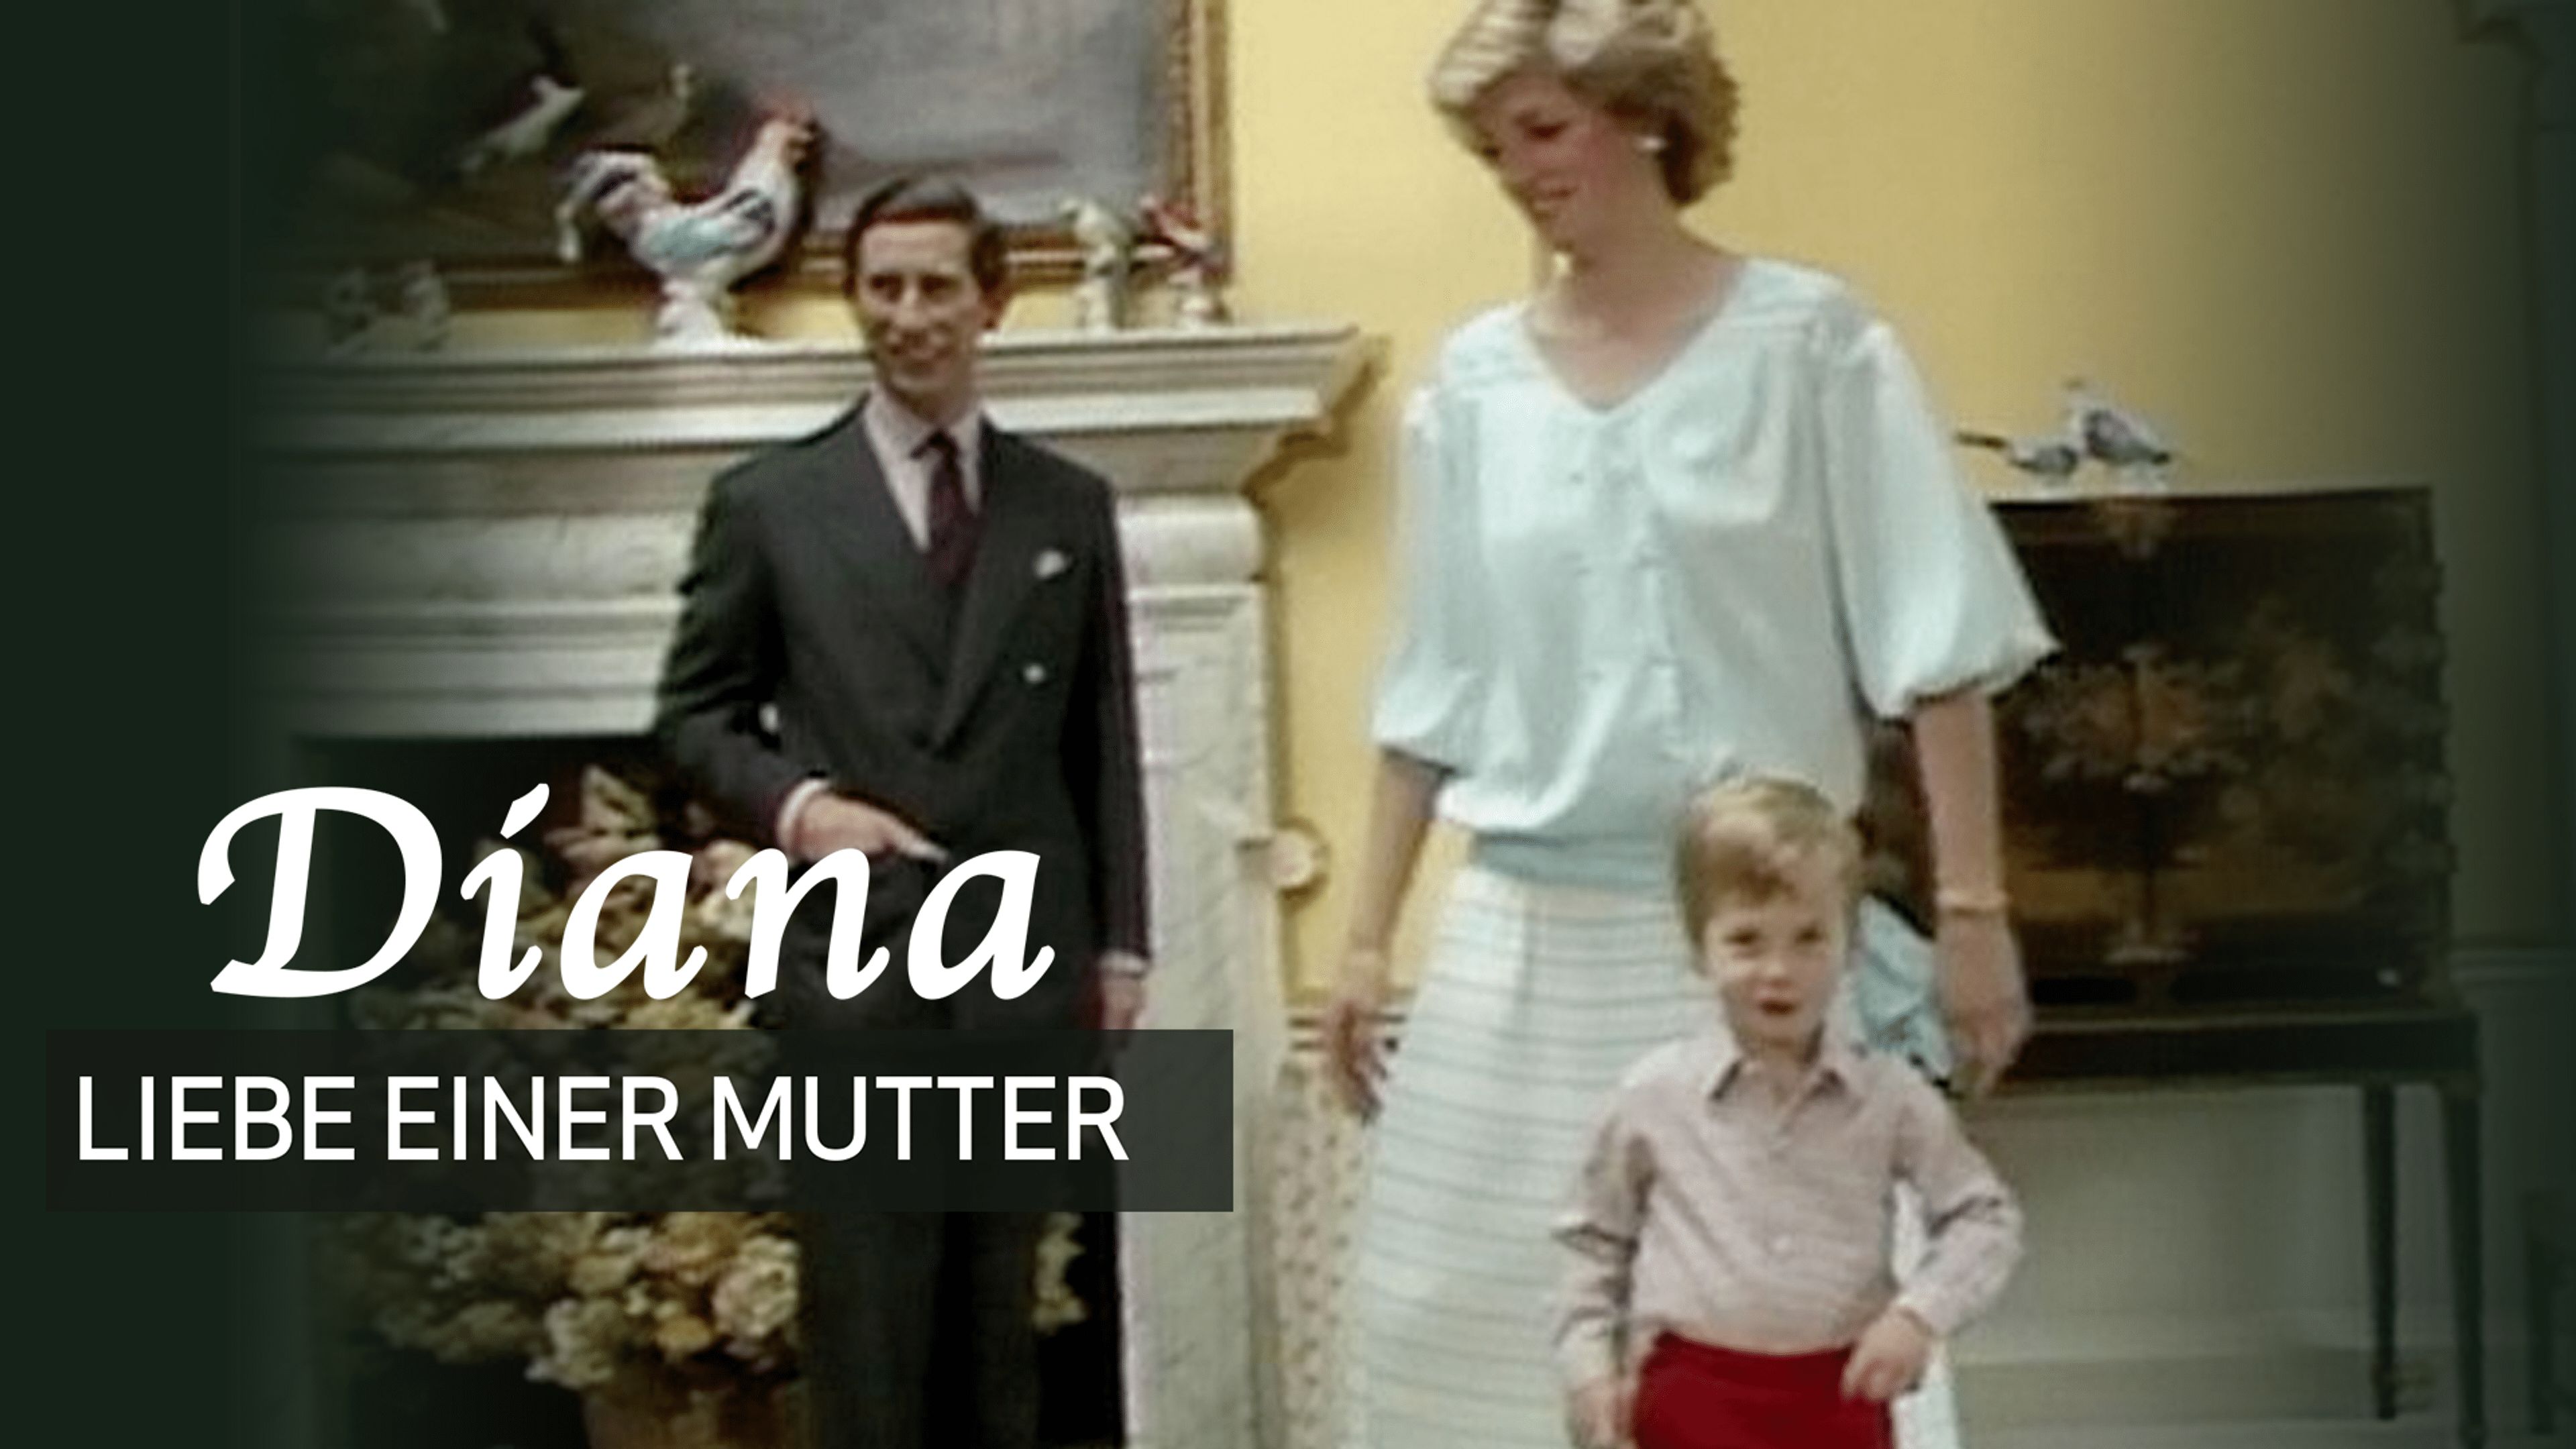 Diana - Die Liebe einer Mutter